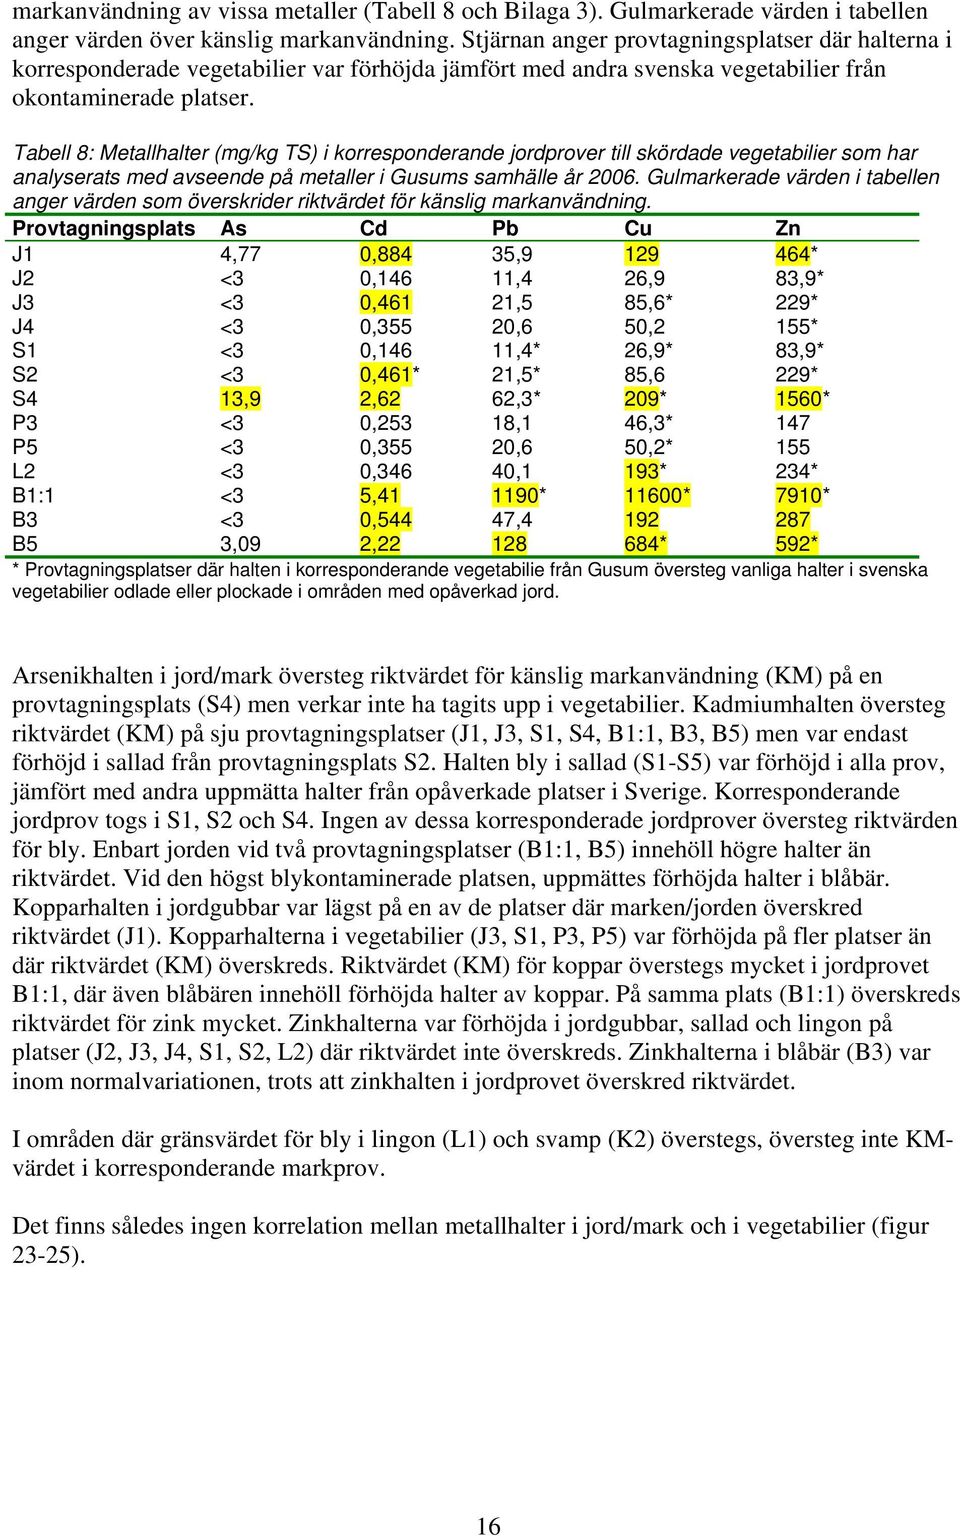 Tabell 8: Metallhalter (mg/kg TS) i korresponderande jordprover till skördade vegetabilier som har analyserats med avseende på metaller i Gusums samhälle år 2006.